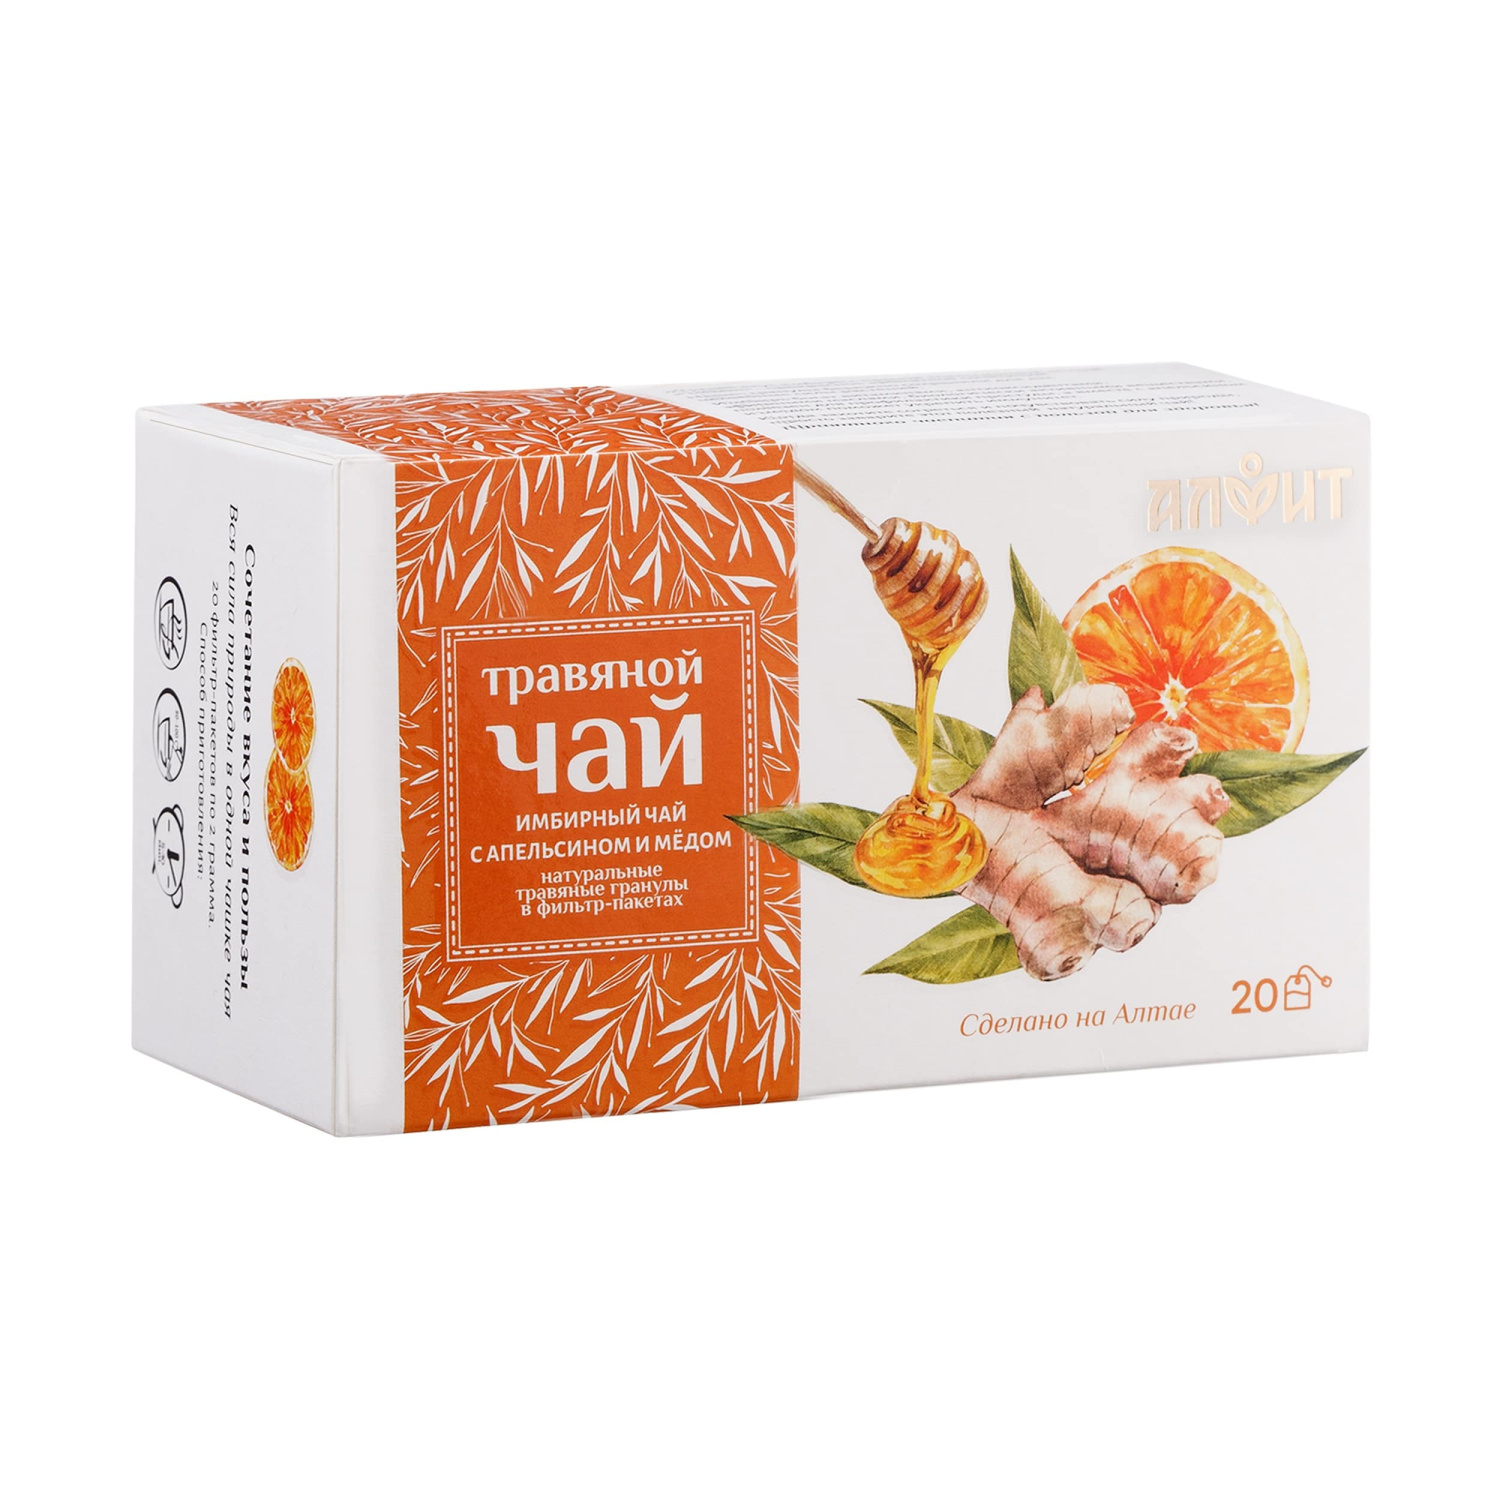 Алфит Травяной чай "Имбирный чай с апельсином и мёдом", 20 фильтр-пакетов по 2 гр.